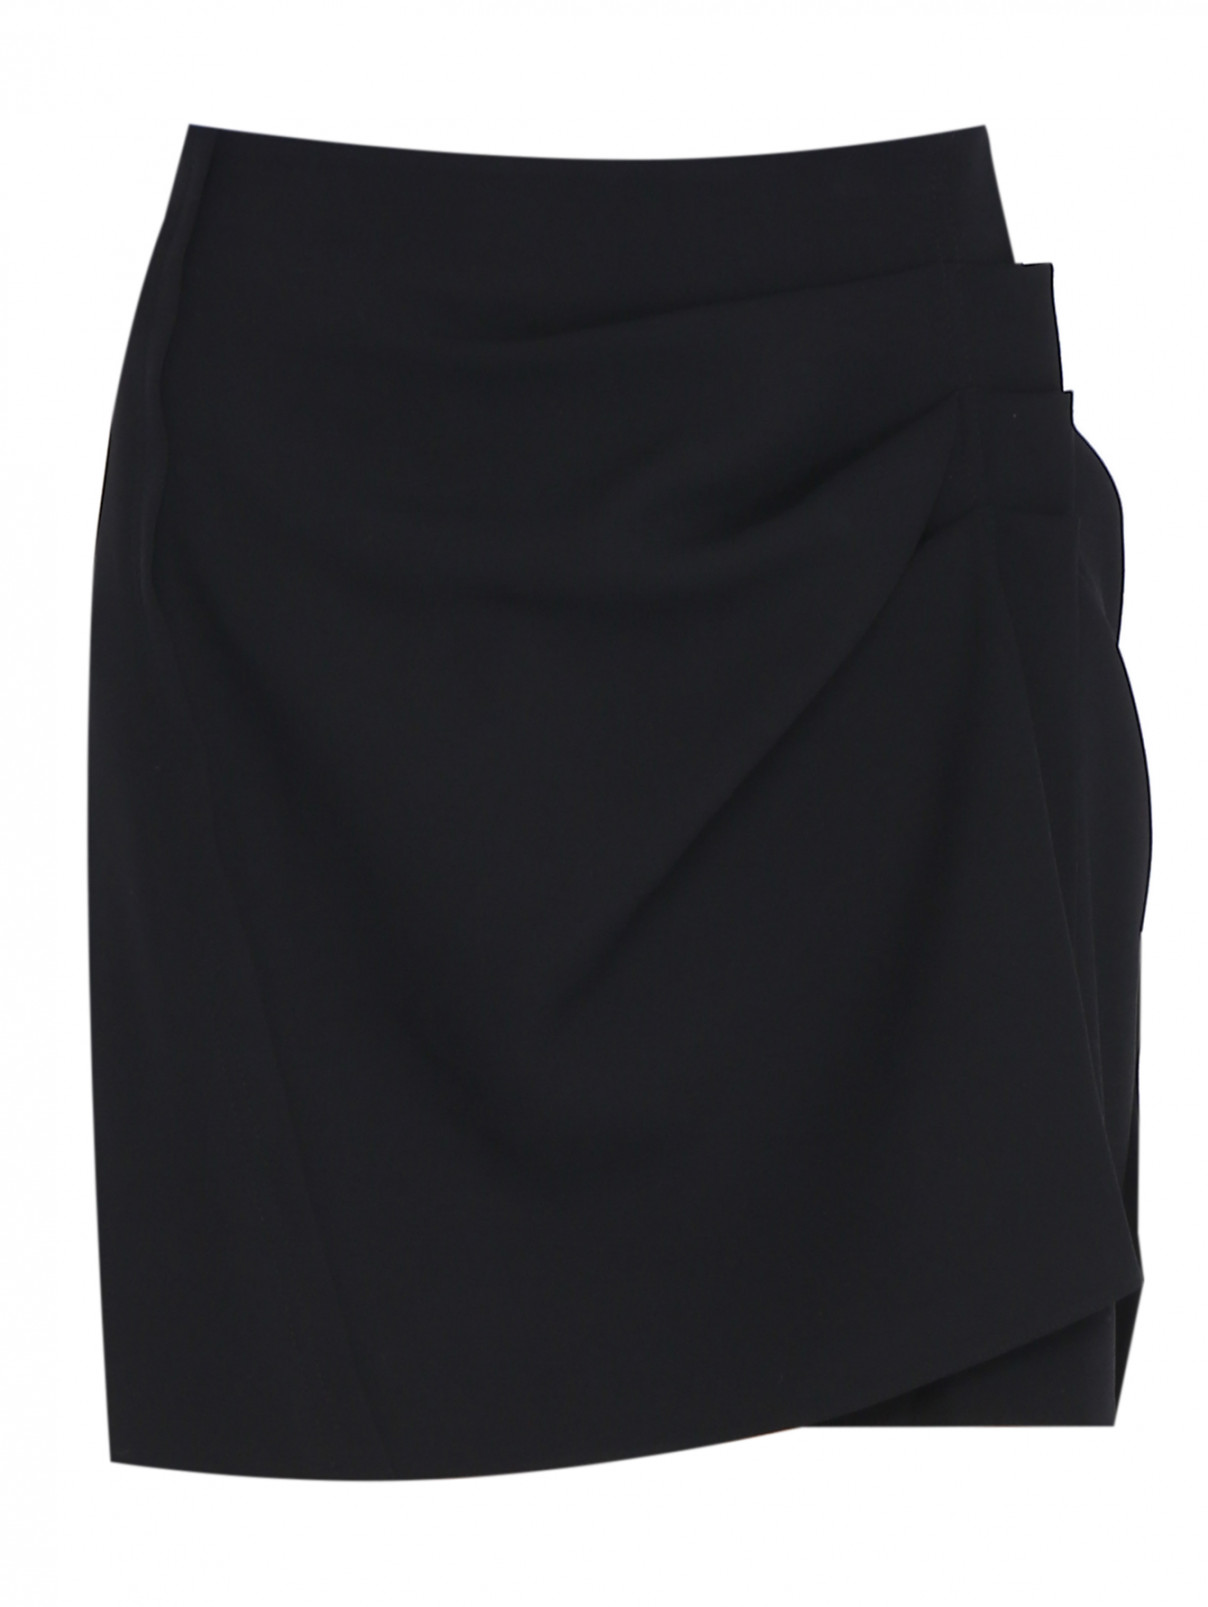 Юбка-мини с драпировкой Iro  –  Общий вид  – Цвет:  Черный